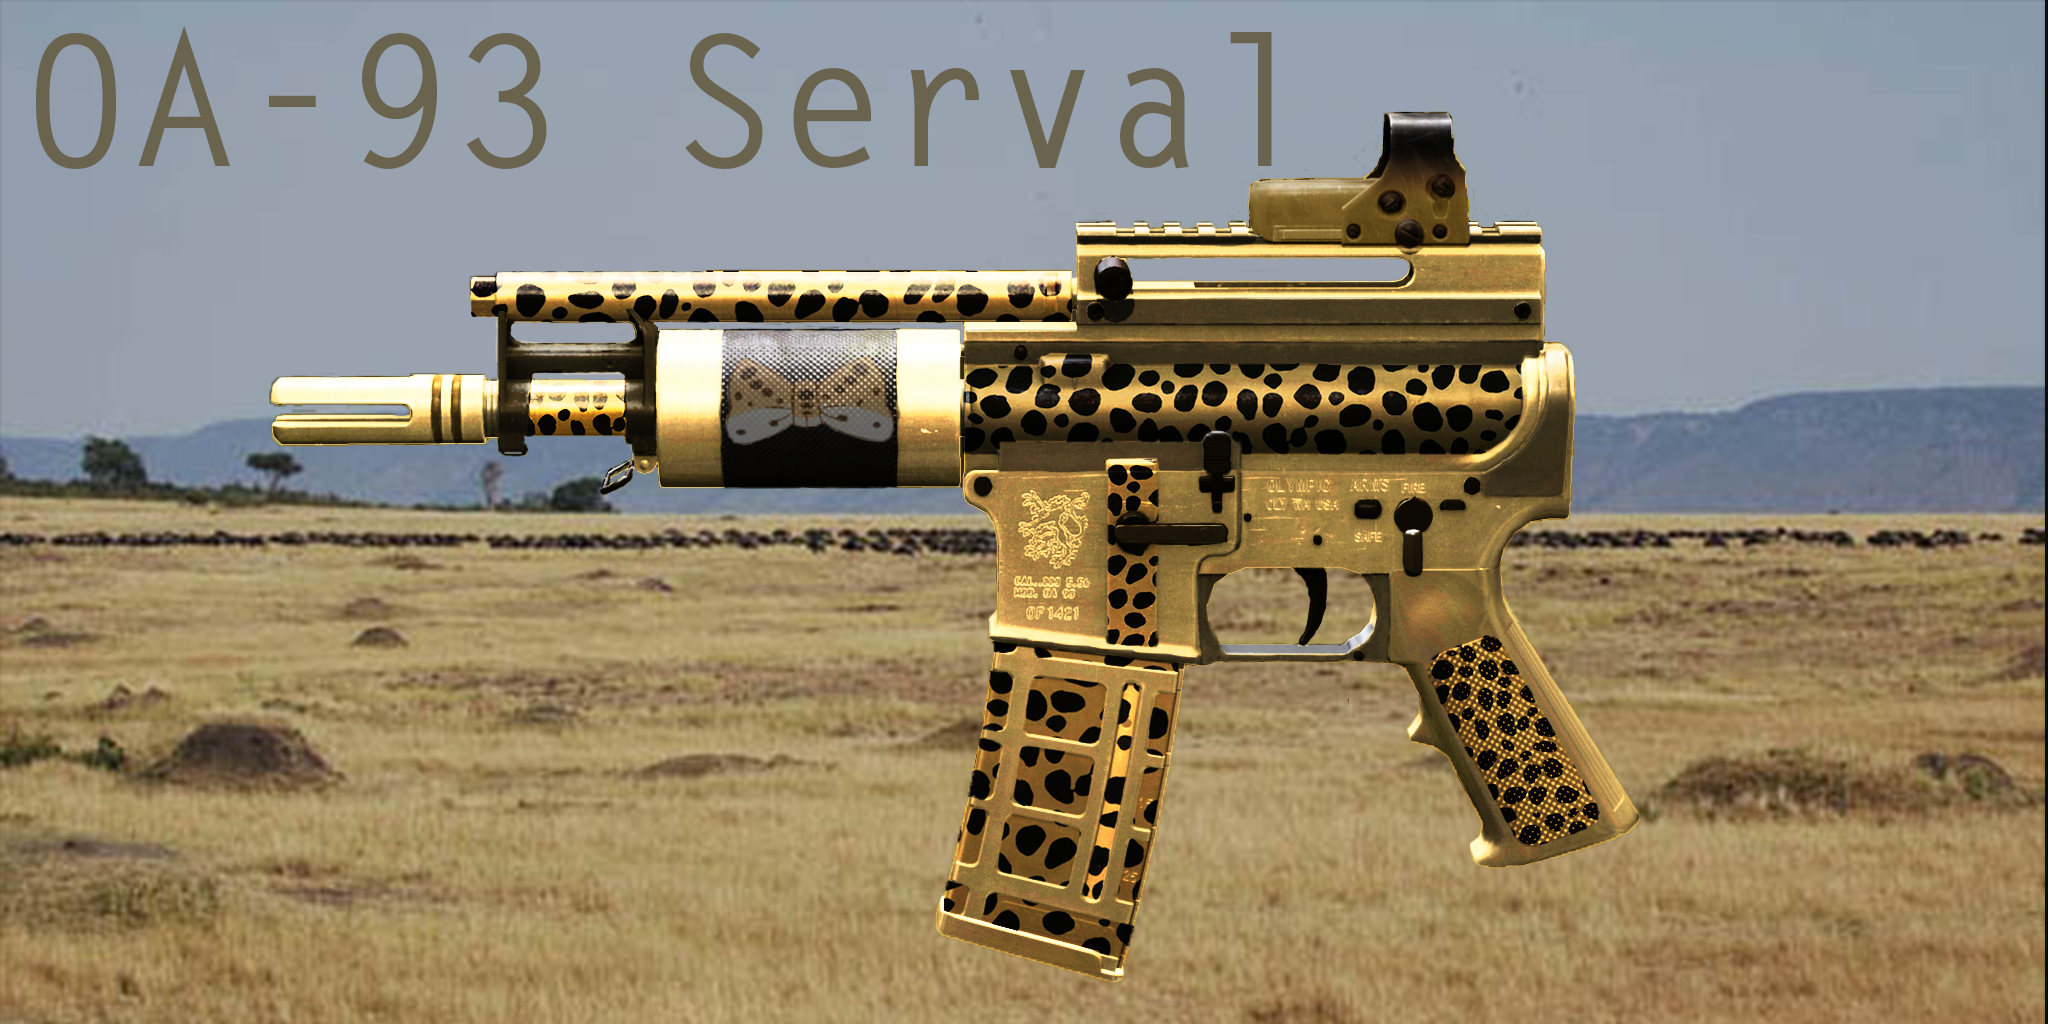 OA-93 Serval